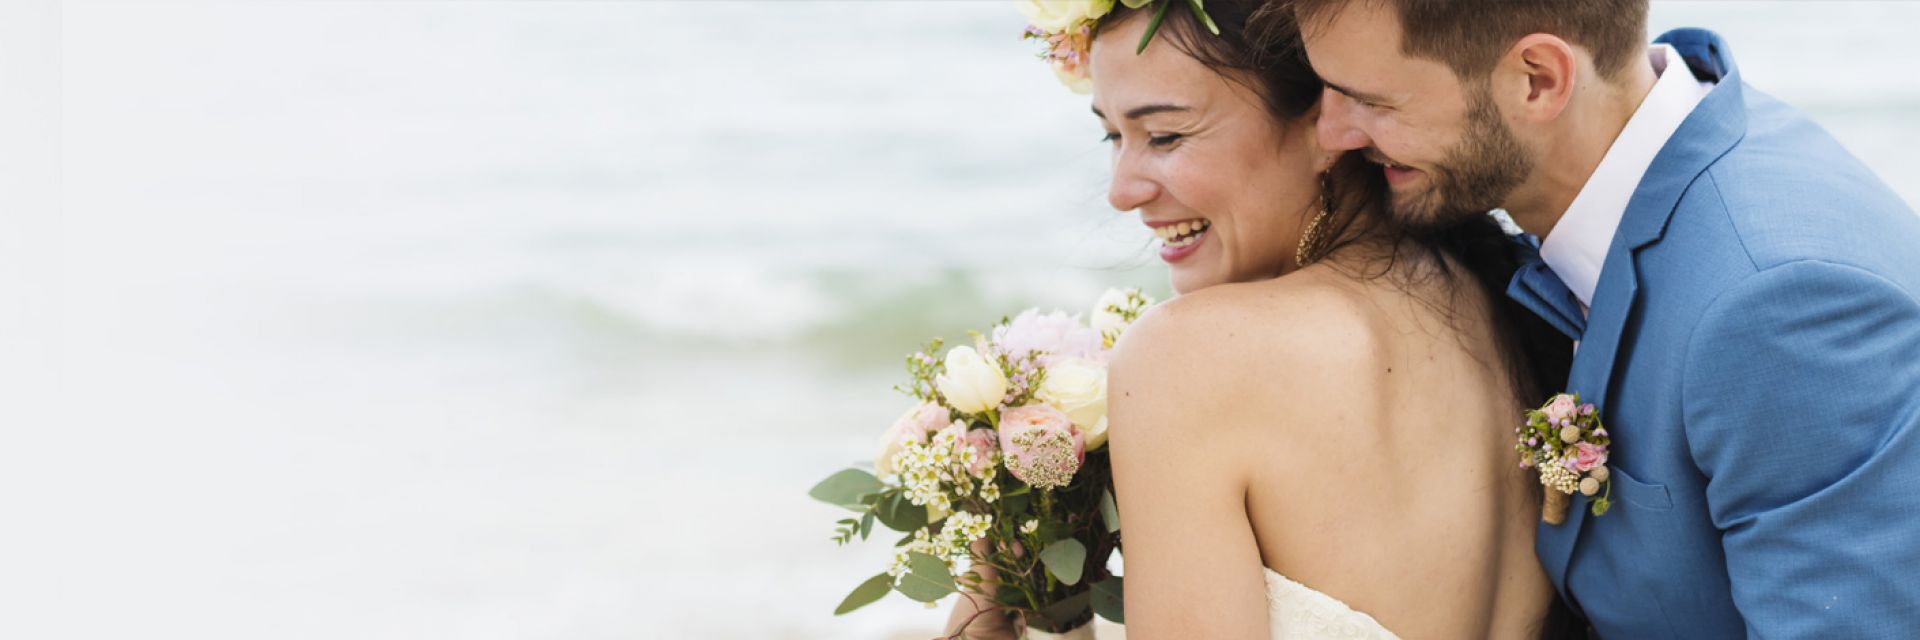 Festa de casamento na praia: 5 dicas para a cerimônia perfeita